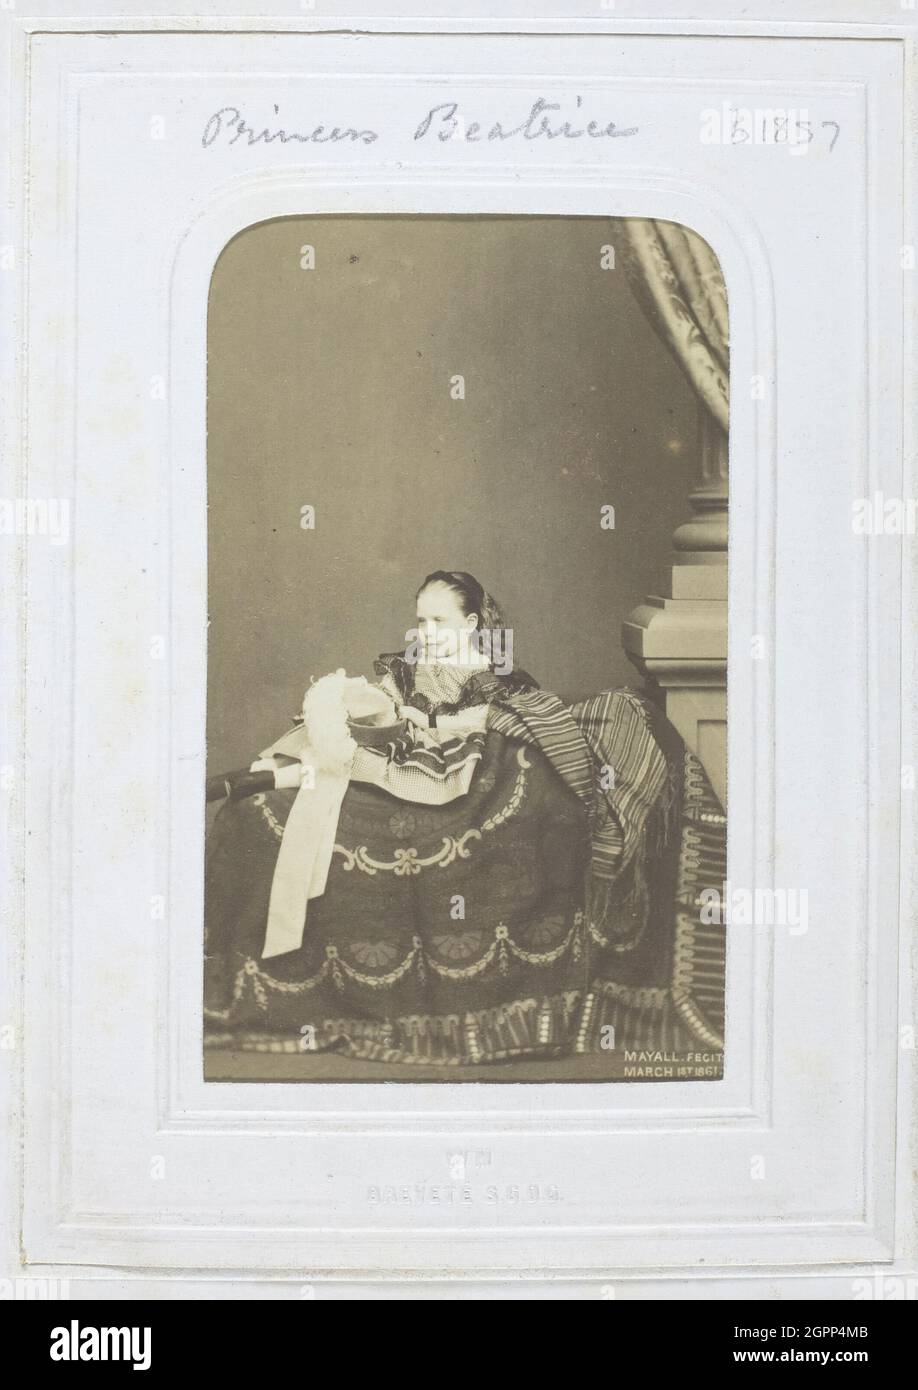 Prinzessin Beatrice, 1861. [Porträt von Prinzessin Beatrice, Tochter von Königin Victoria]. Albumin-Druck. Stockfoto